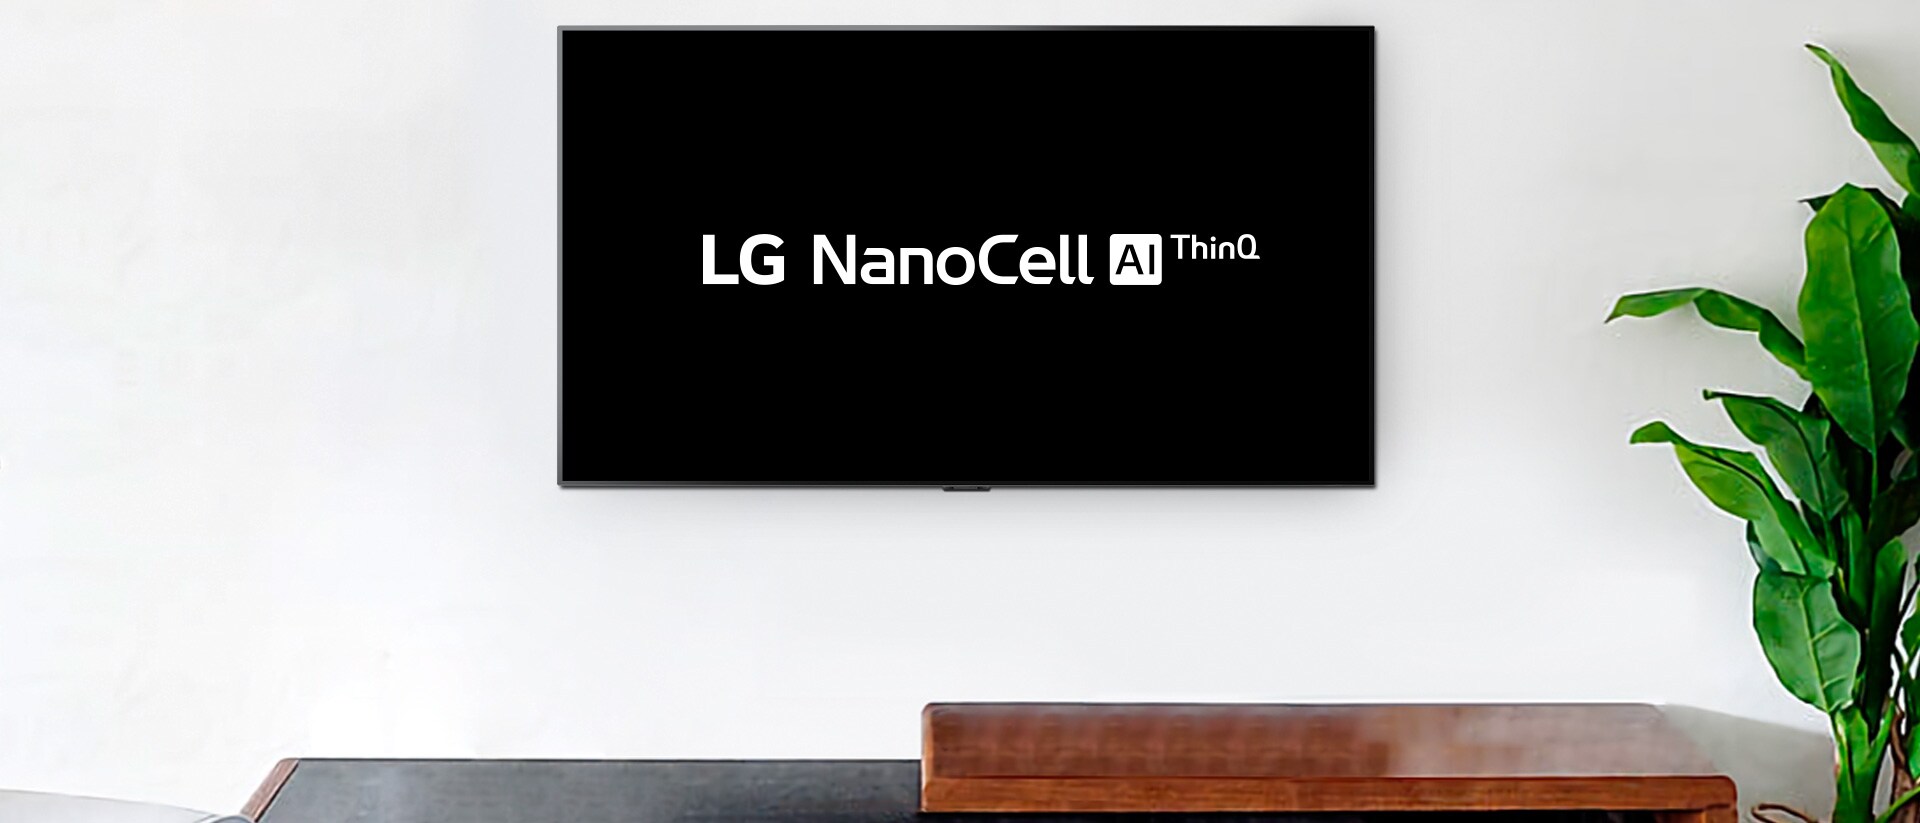 Wandtelevisie met LG OLED AI ThinQ-logo op zwarte achtergrond